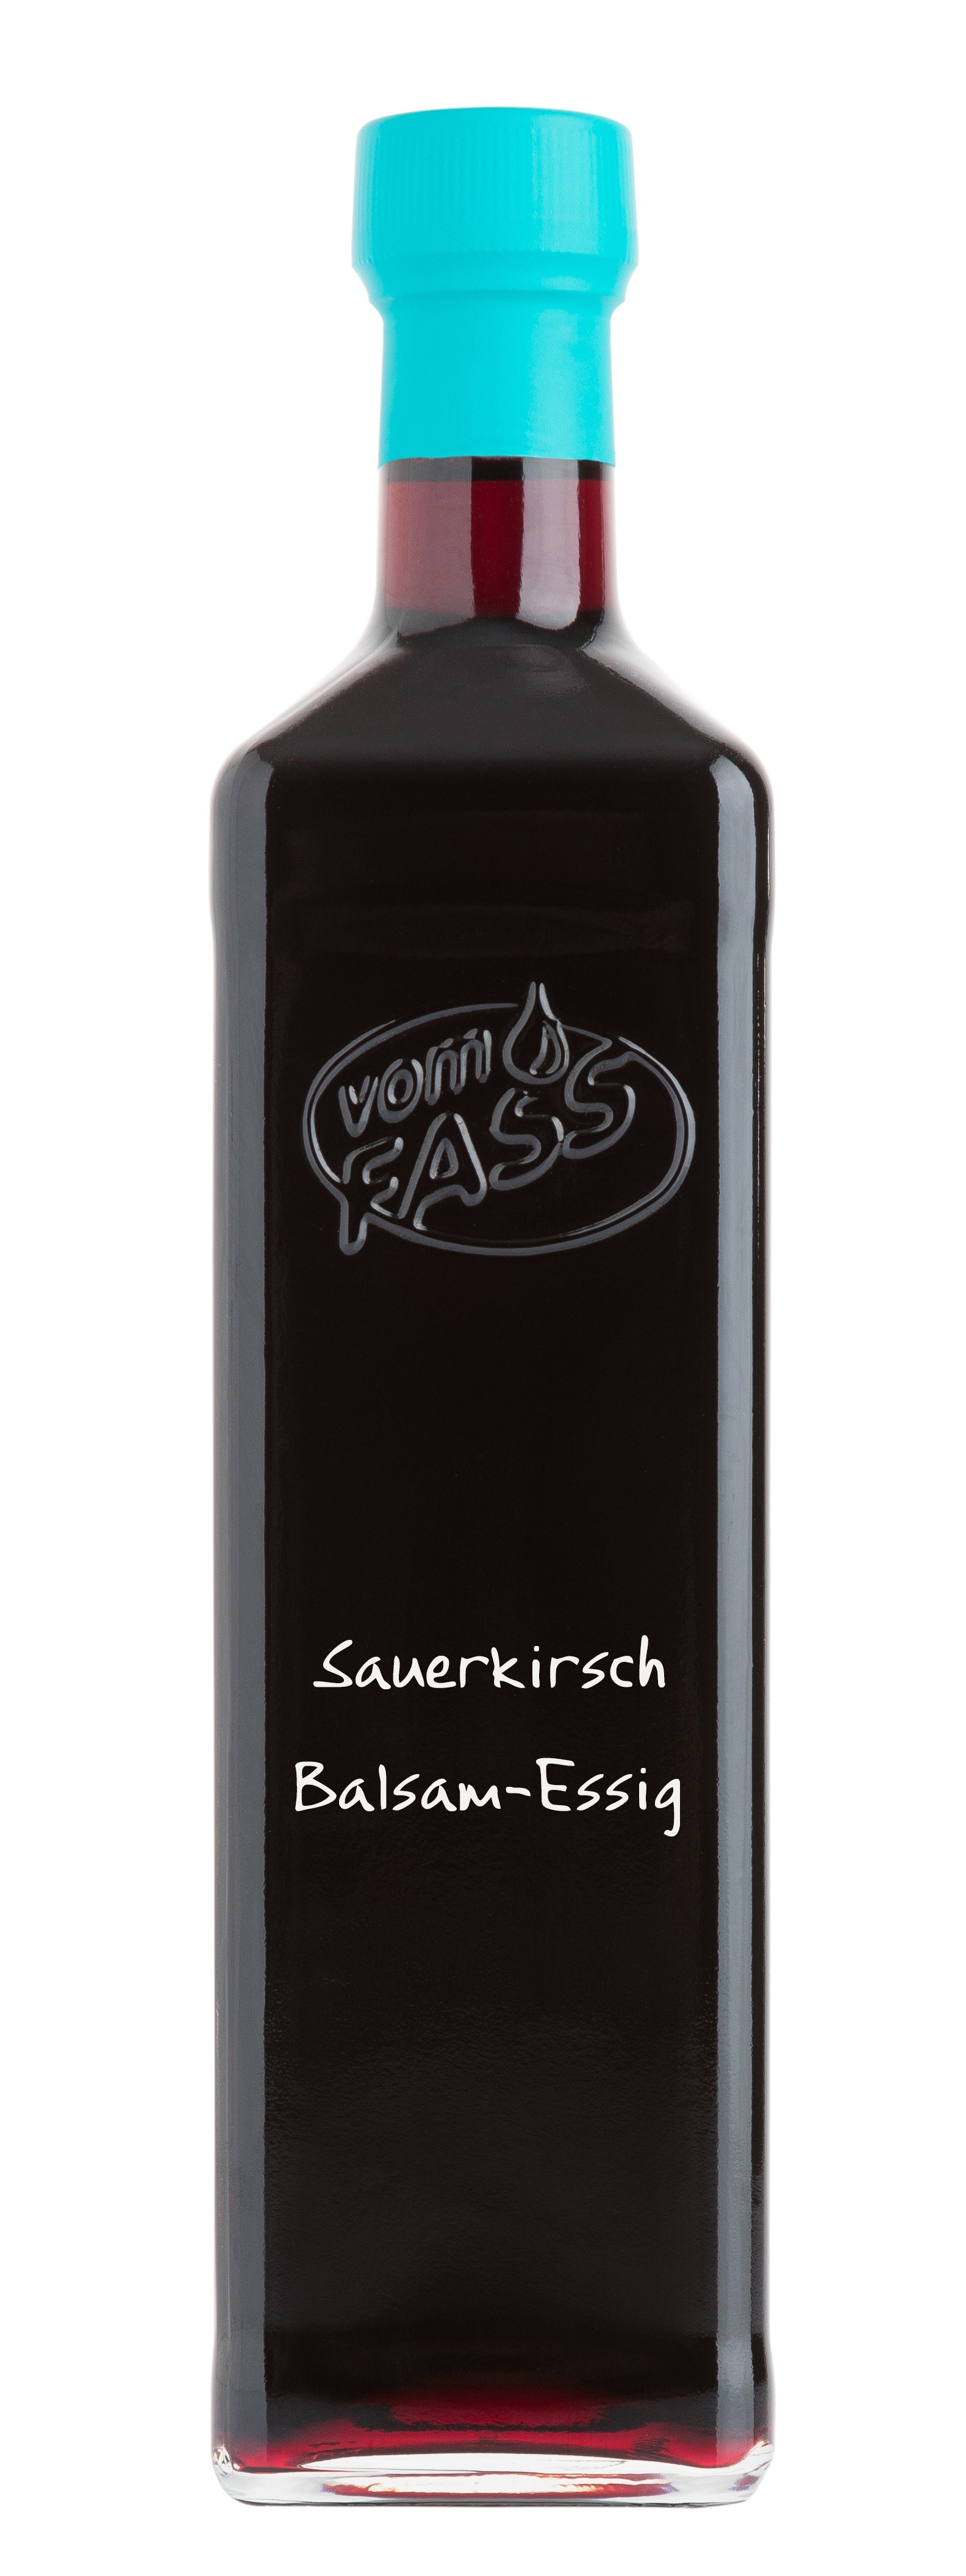 Sauerkirsch Balsam-Essig